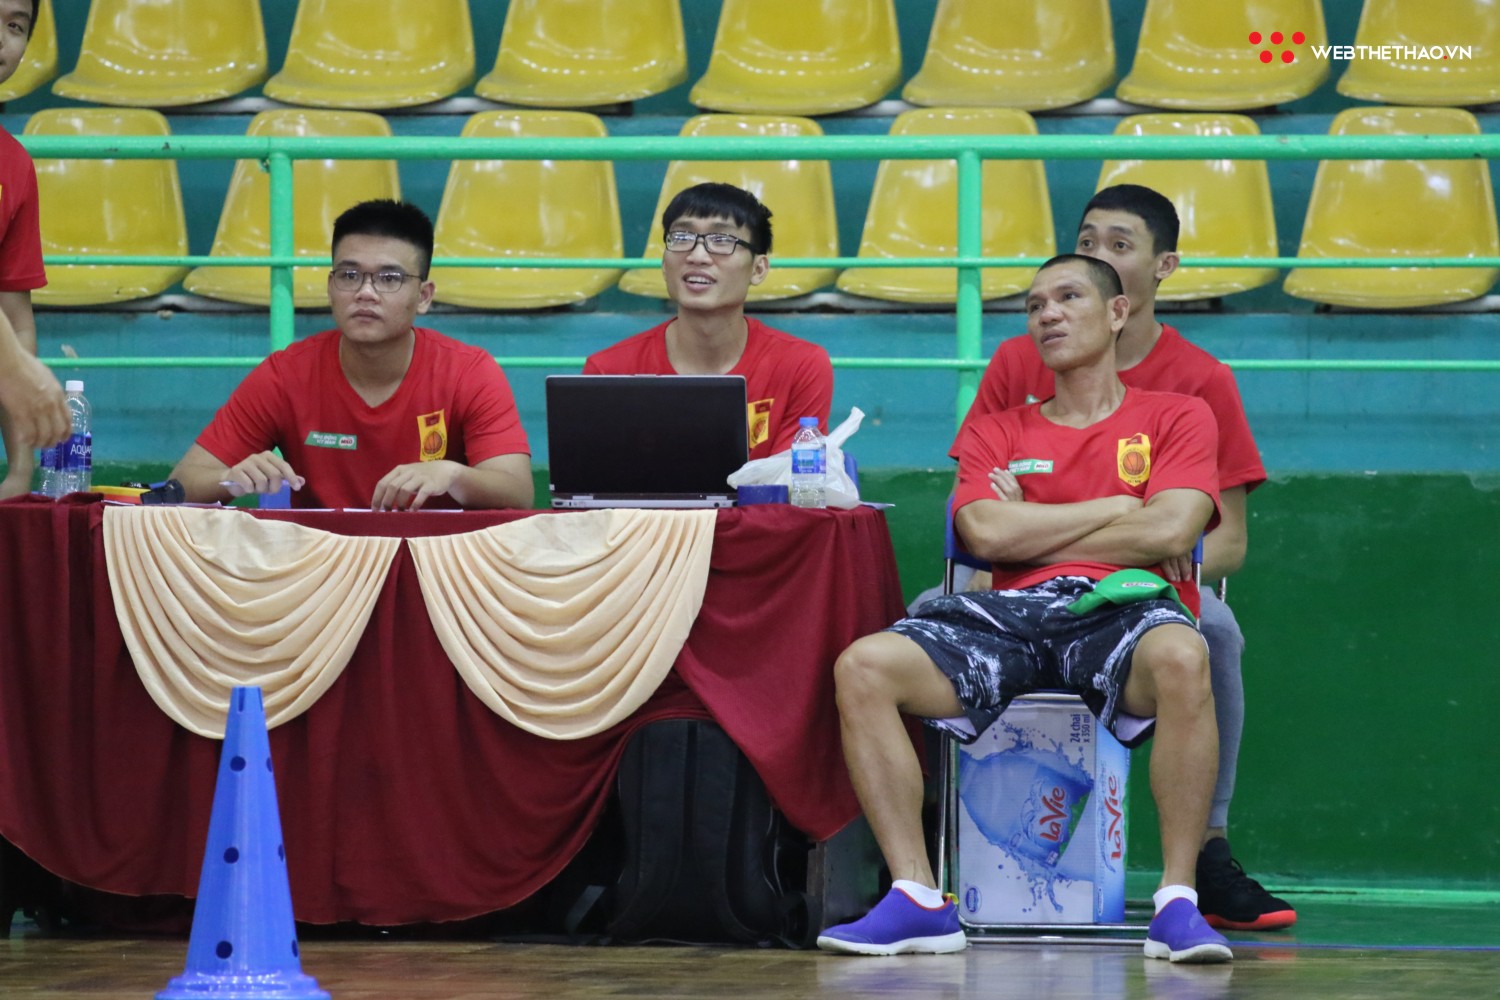 Ngày hội tuyển chọn vận động viên bóng rổ TP HCM: Sao VBA tất bật truyền lửa cho thế hệ đàn em - Ảnh 12.